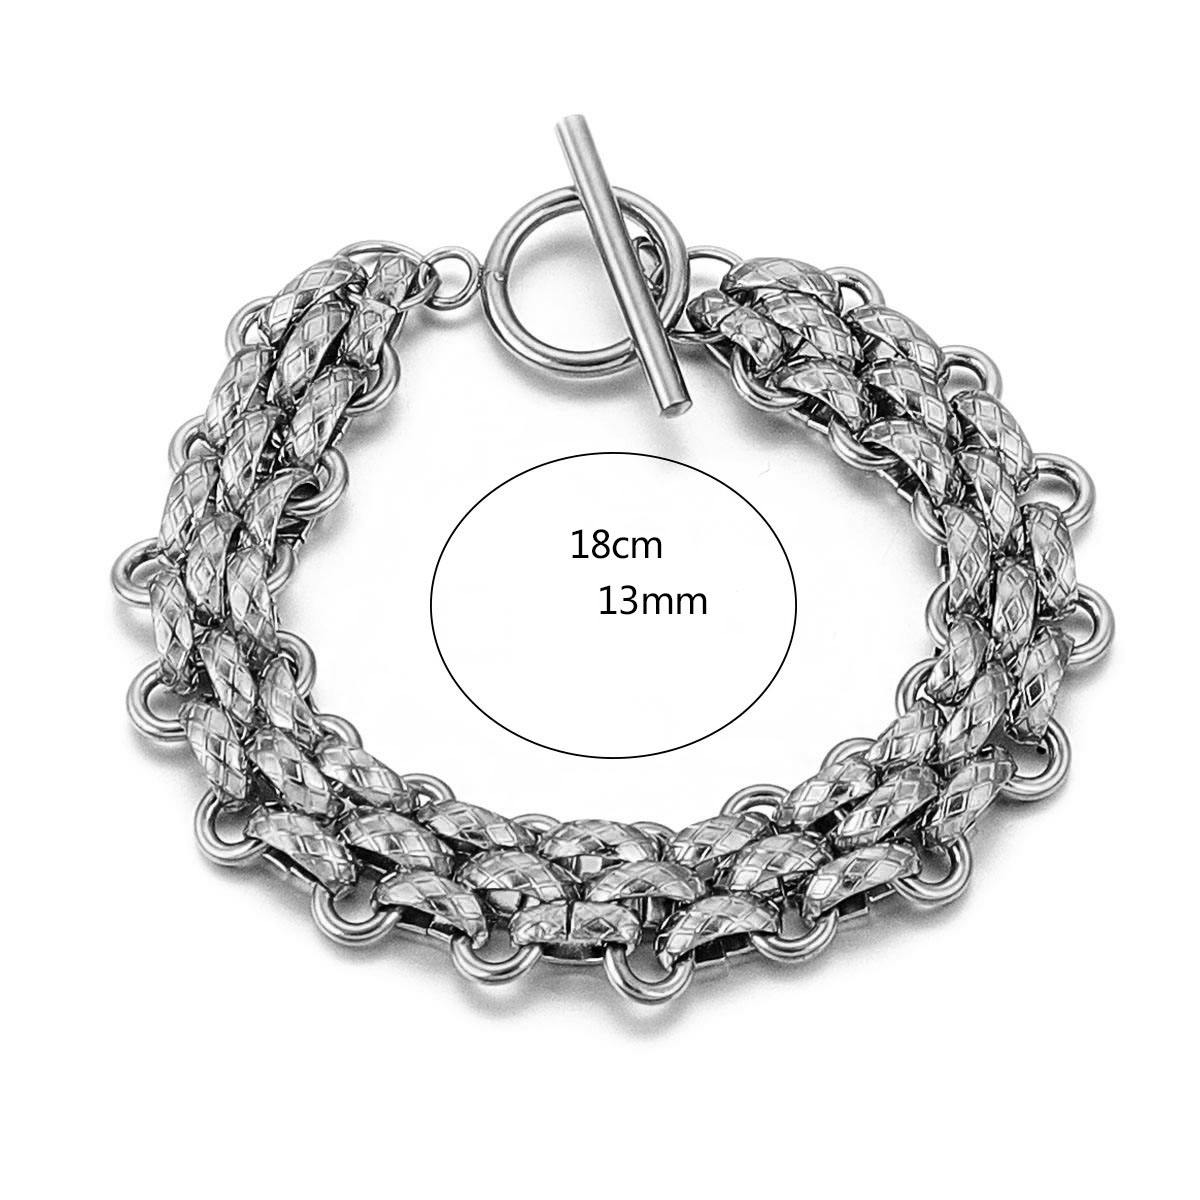 2:Texture bracelet-steel color